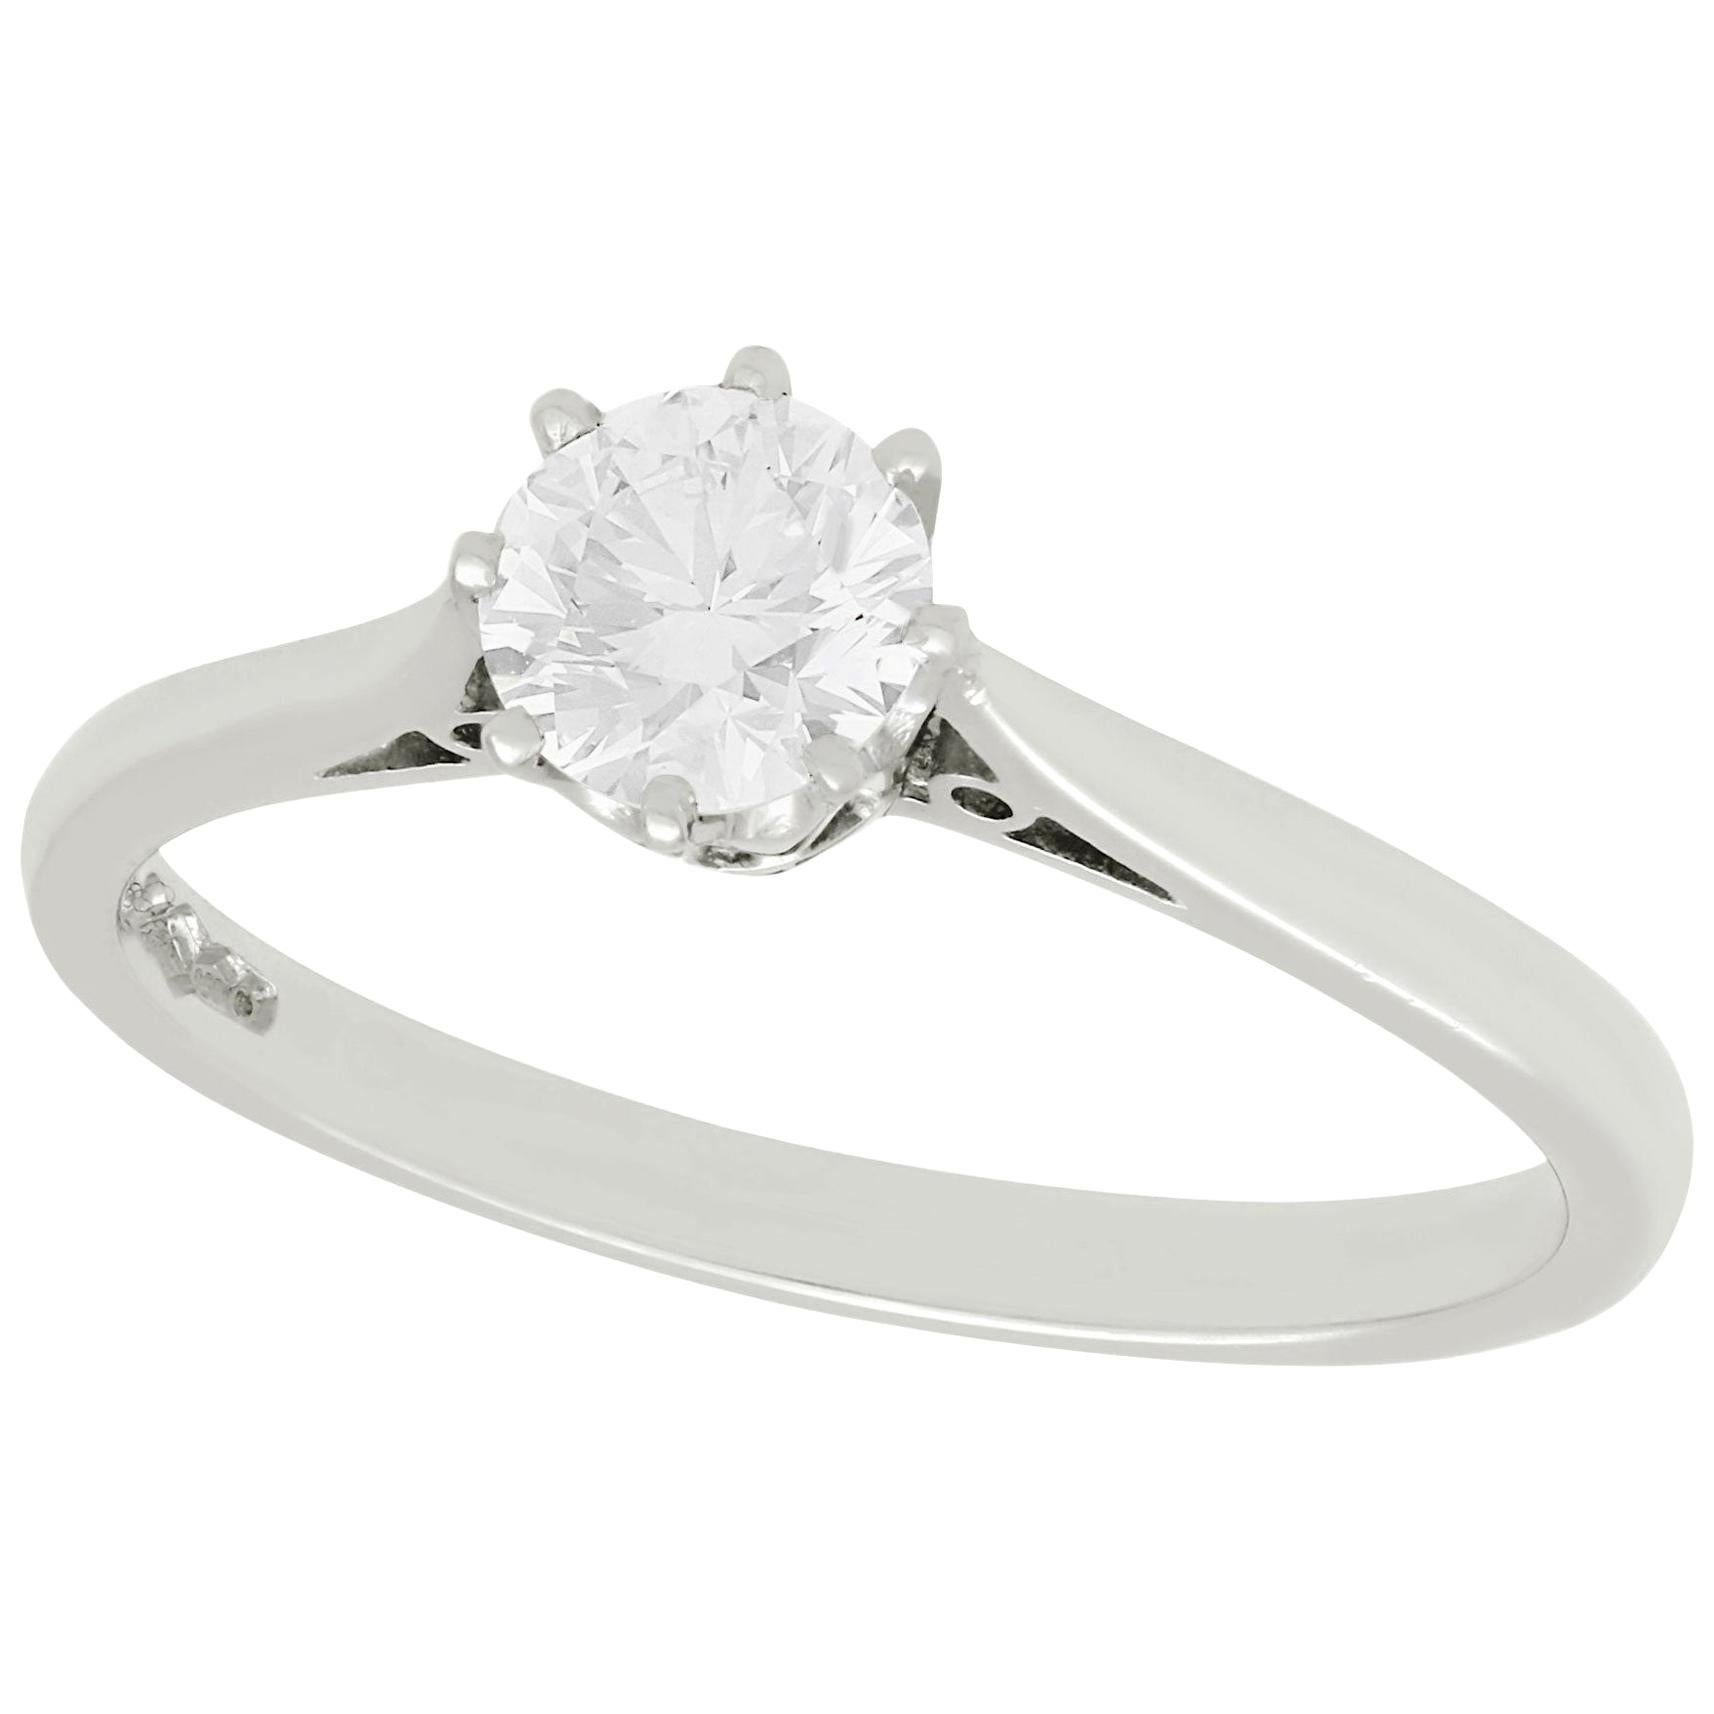 Diamond and Platinum Solitaire Engagement Ring, circa 1980